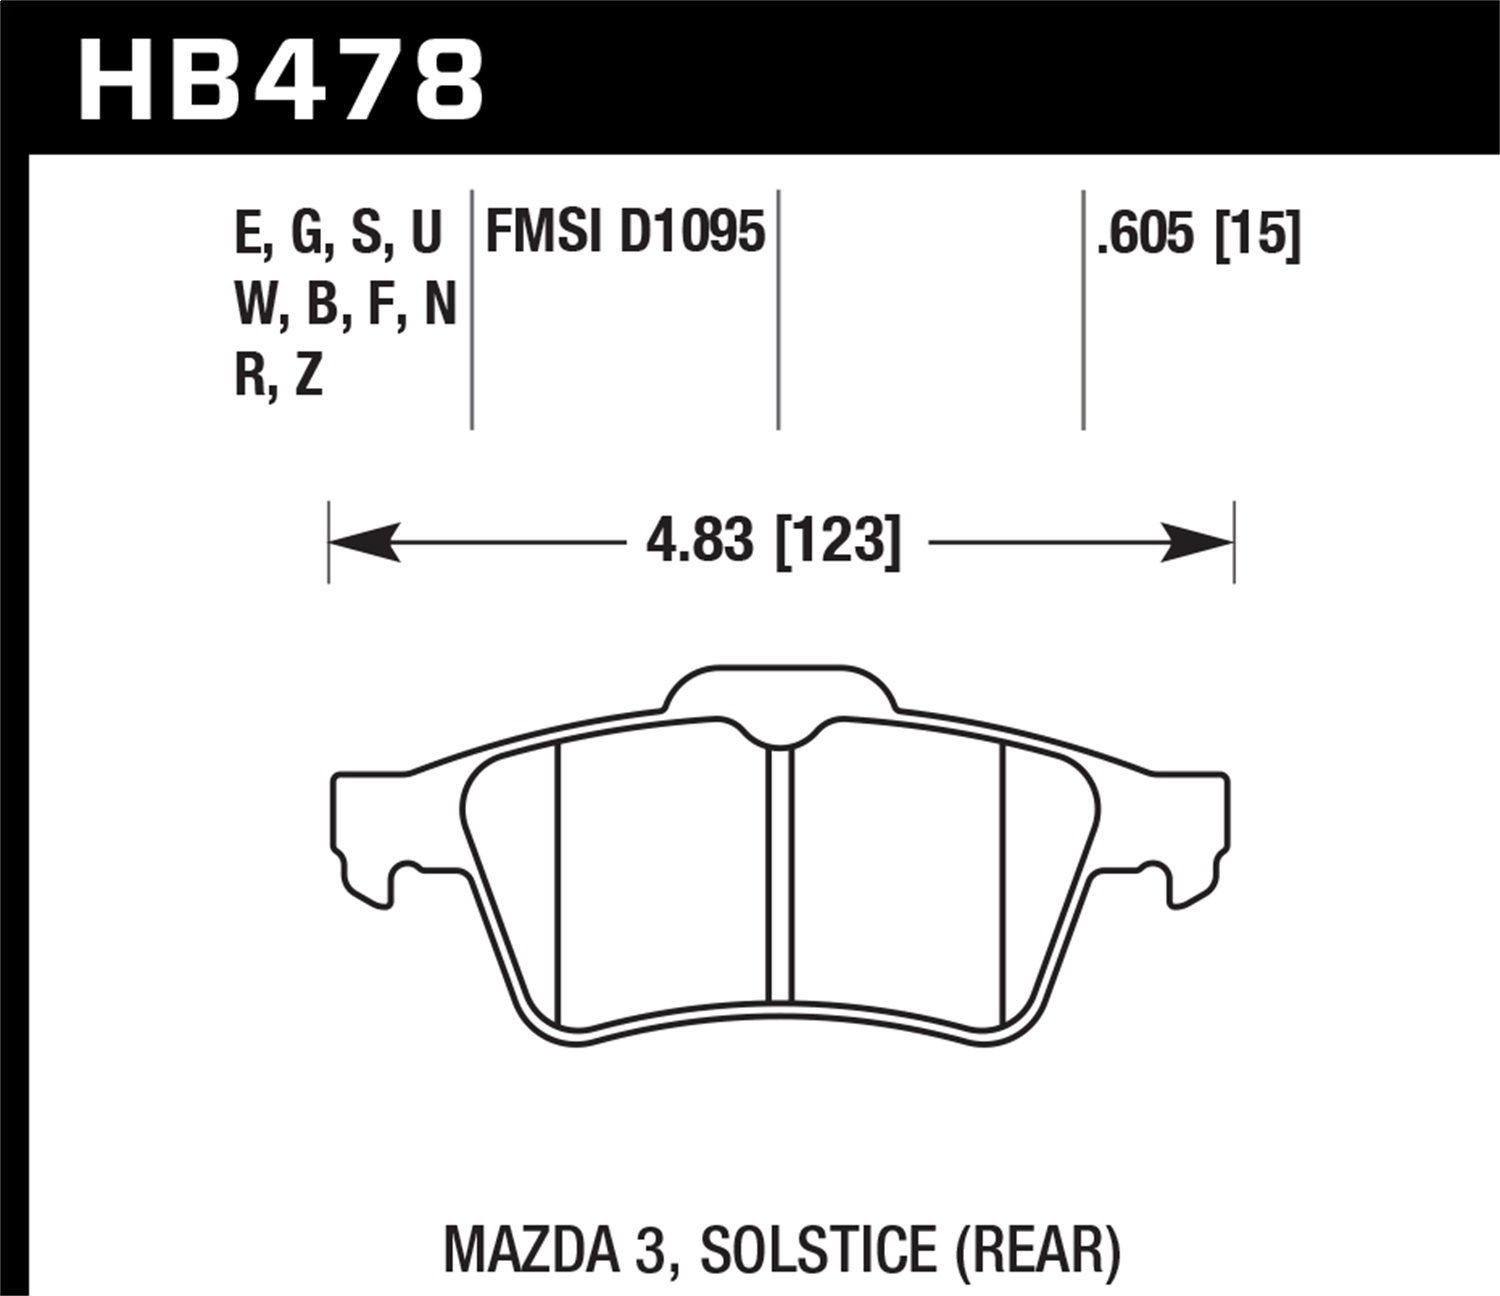 DTC-30 BRAKE PADS Mazda 3 Solstice Rear